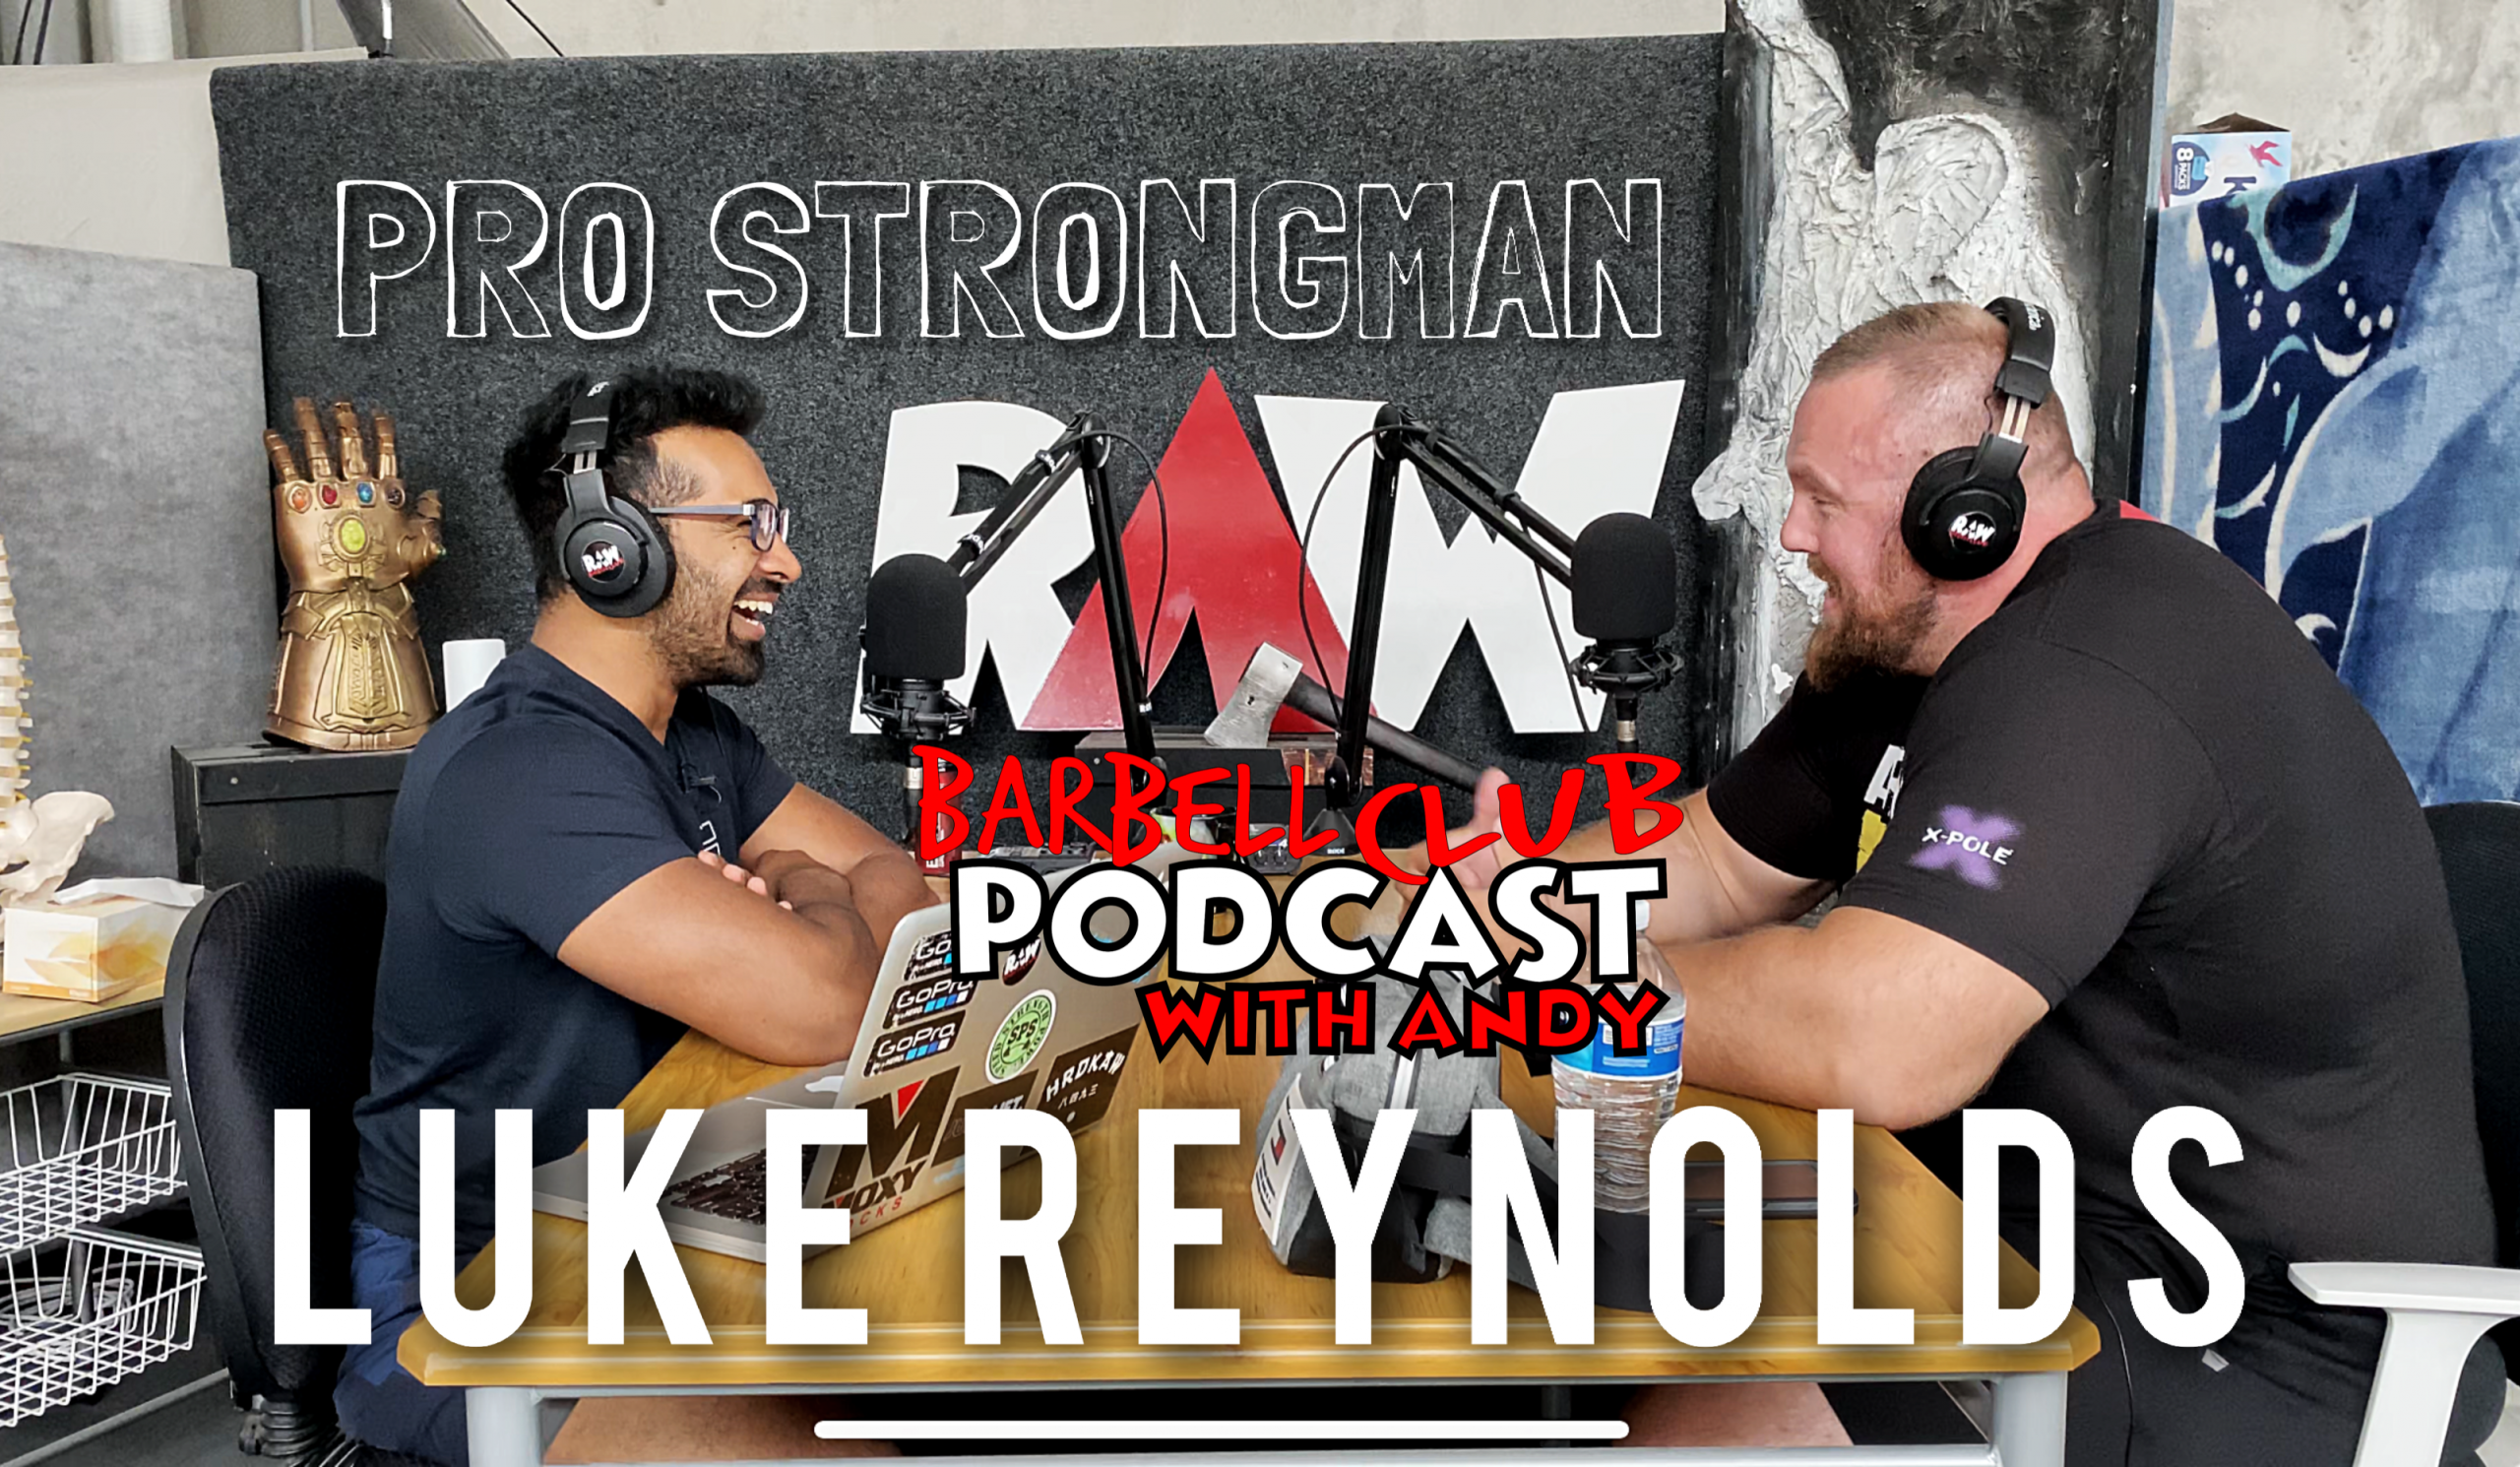 Pro Strongman Luke Reynolds